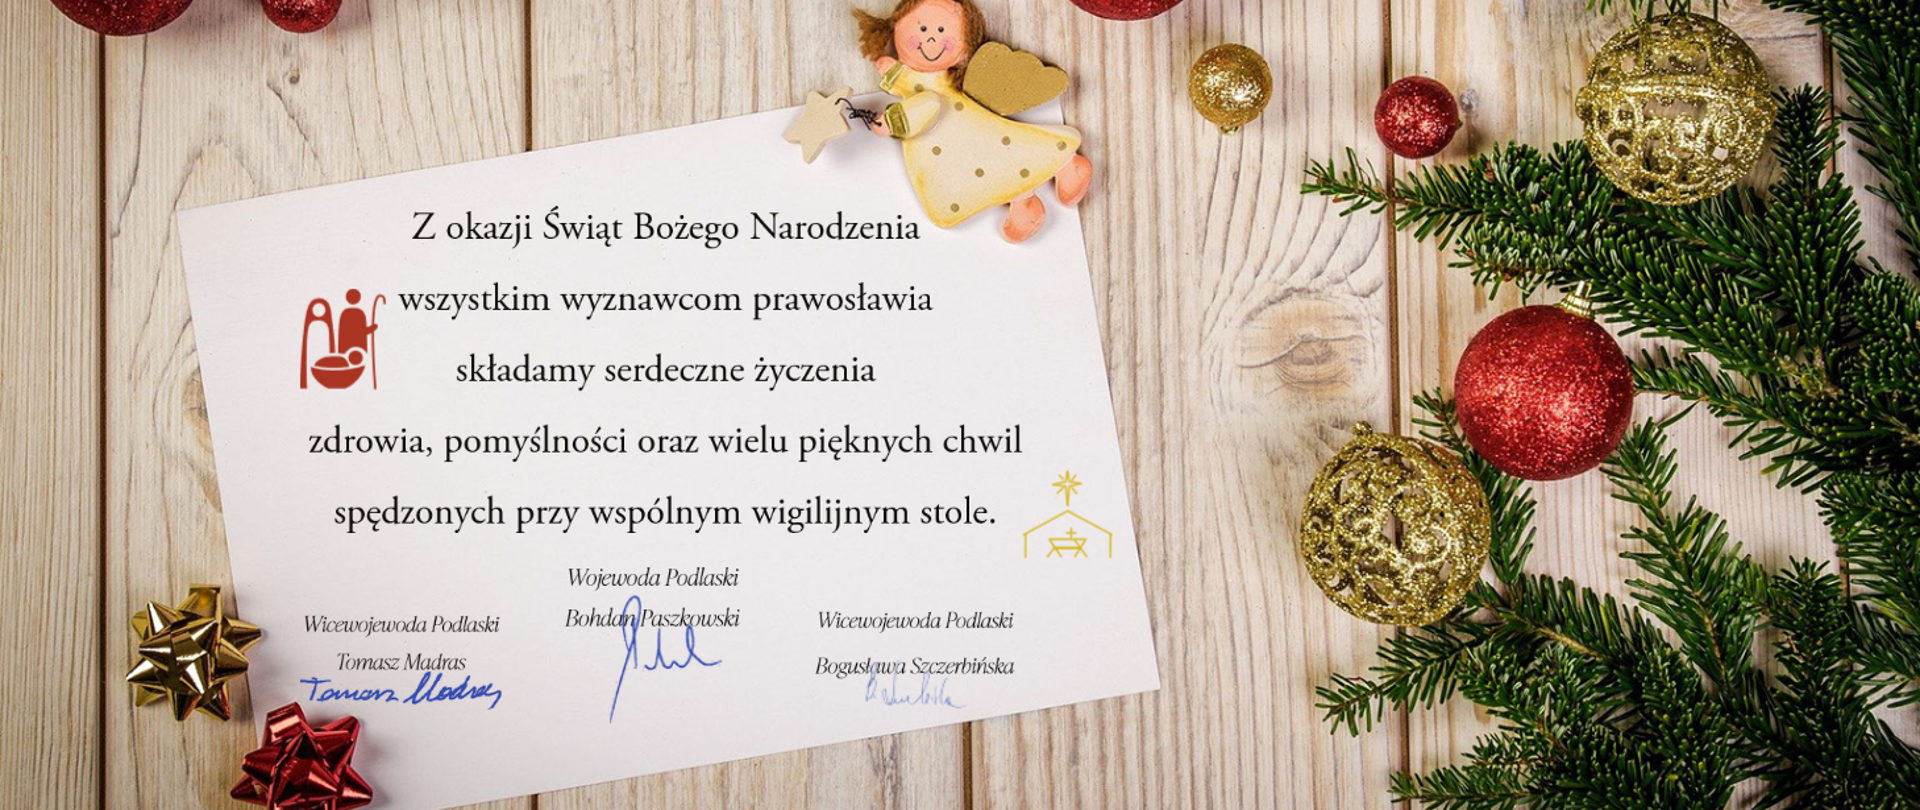 Serdeczne życzenia z okazji Świąt Bożego Narodzenia wyznawcom prawosławia